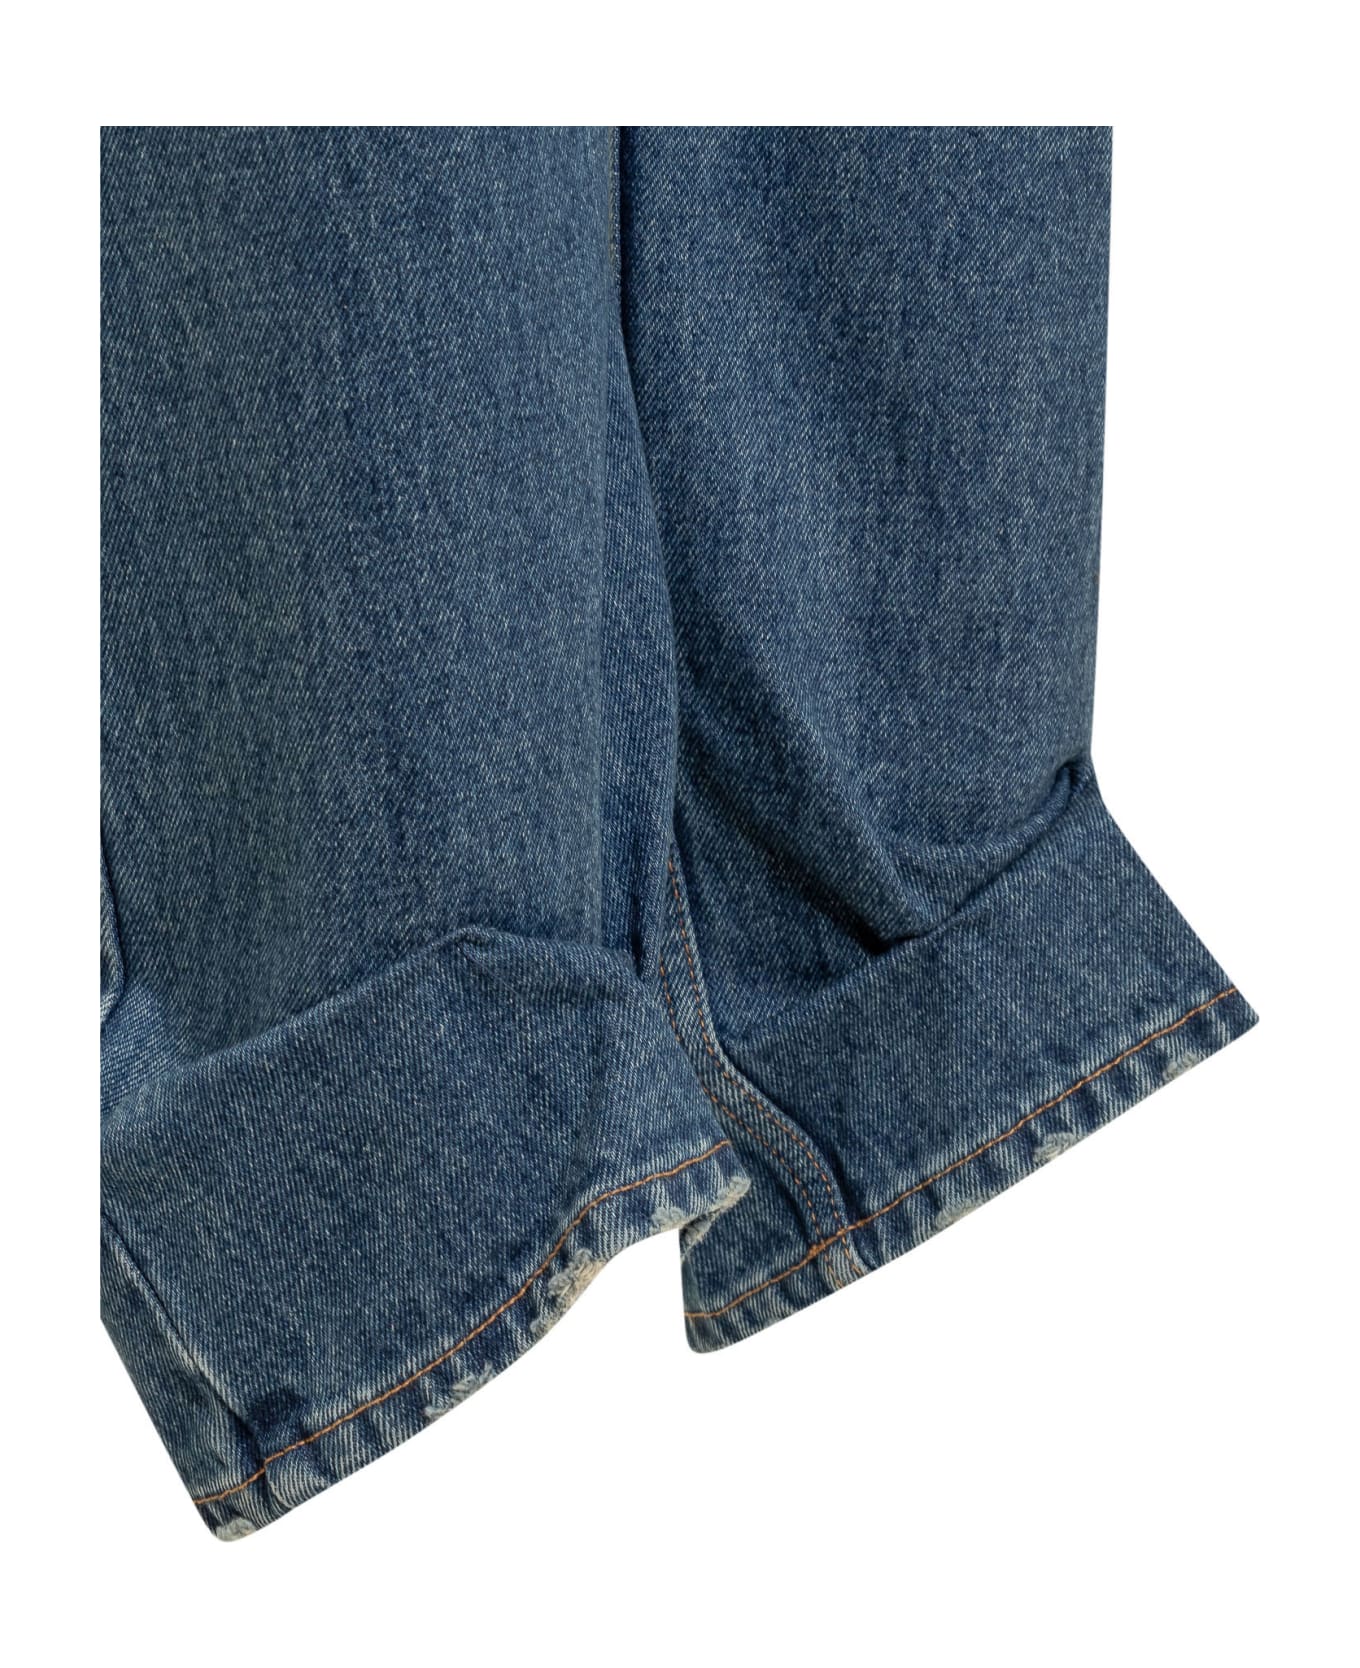 DARKPARK Liz Jeans - Medium Wash